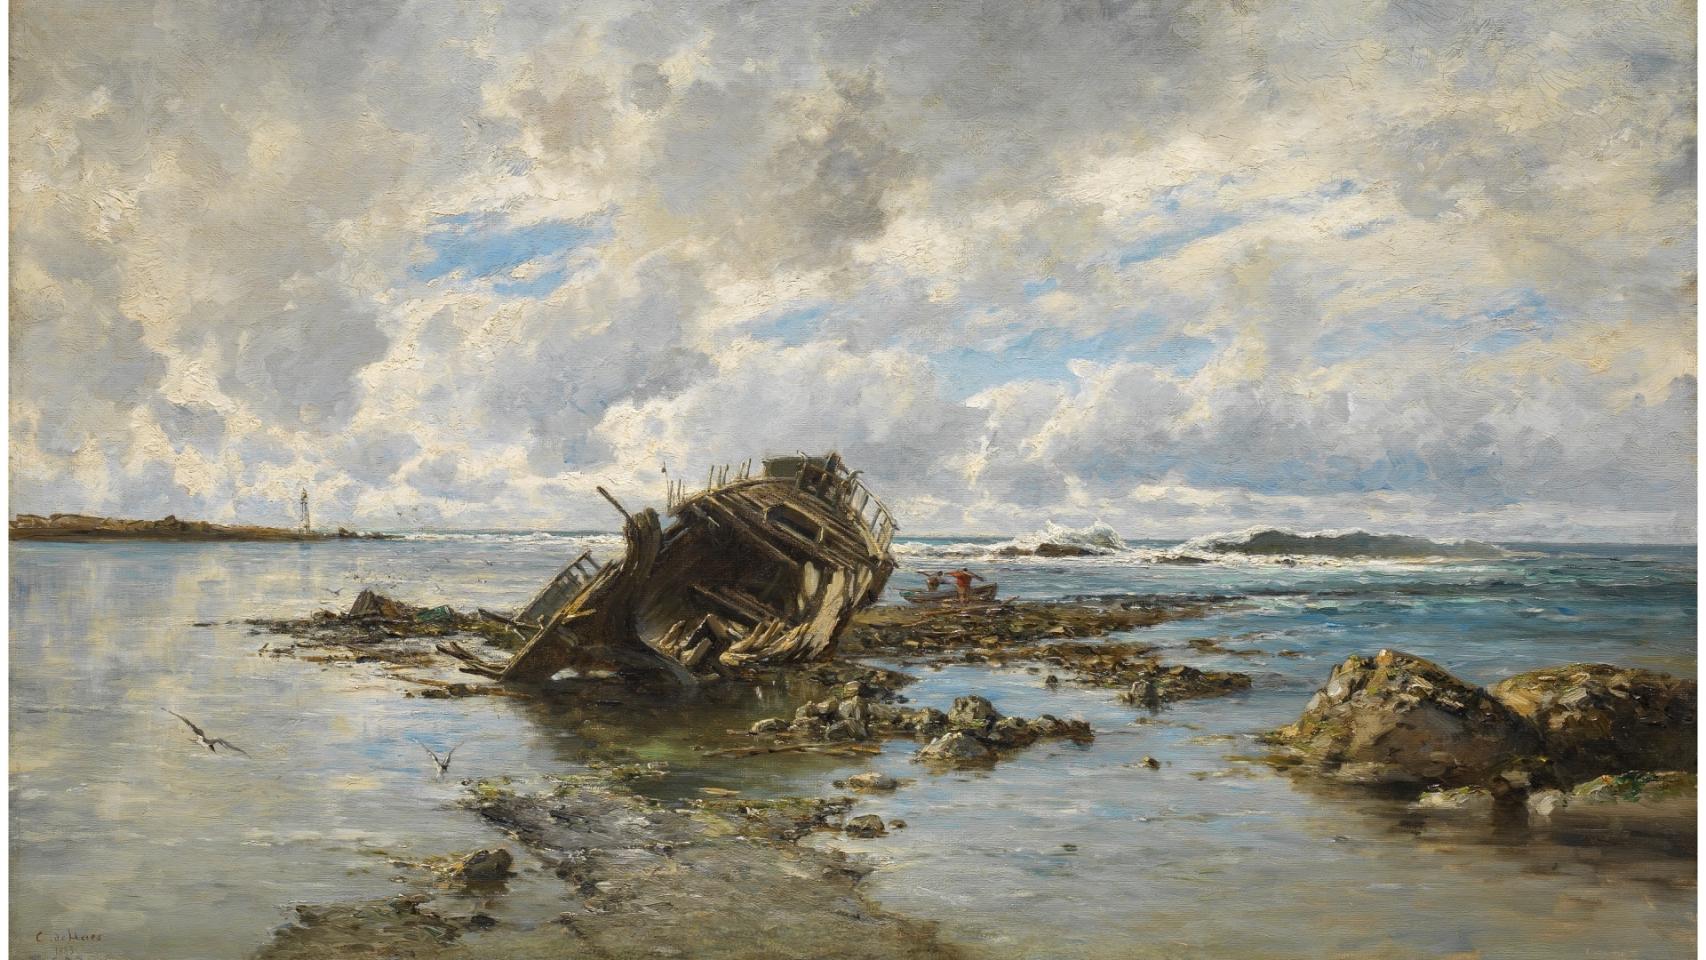 Un barco naufragado, obra de Carlos de Haes. 1883